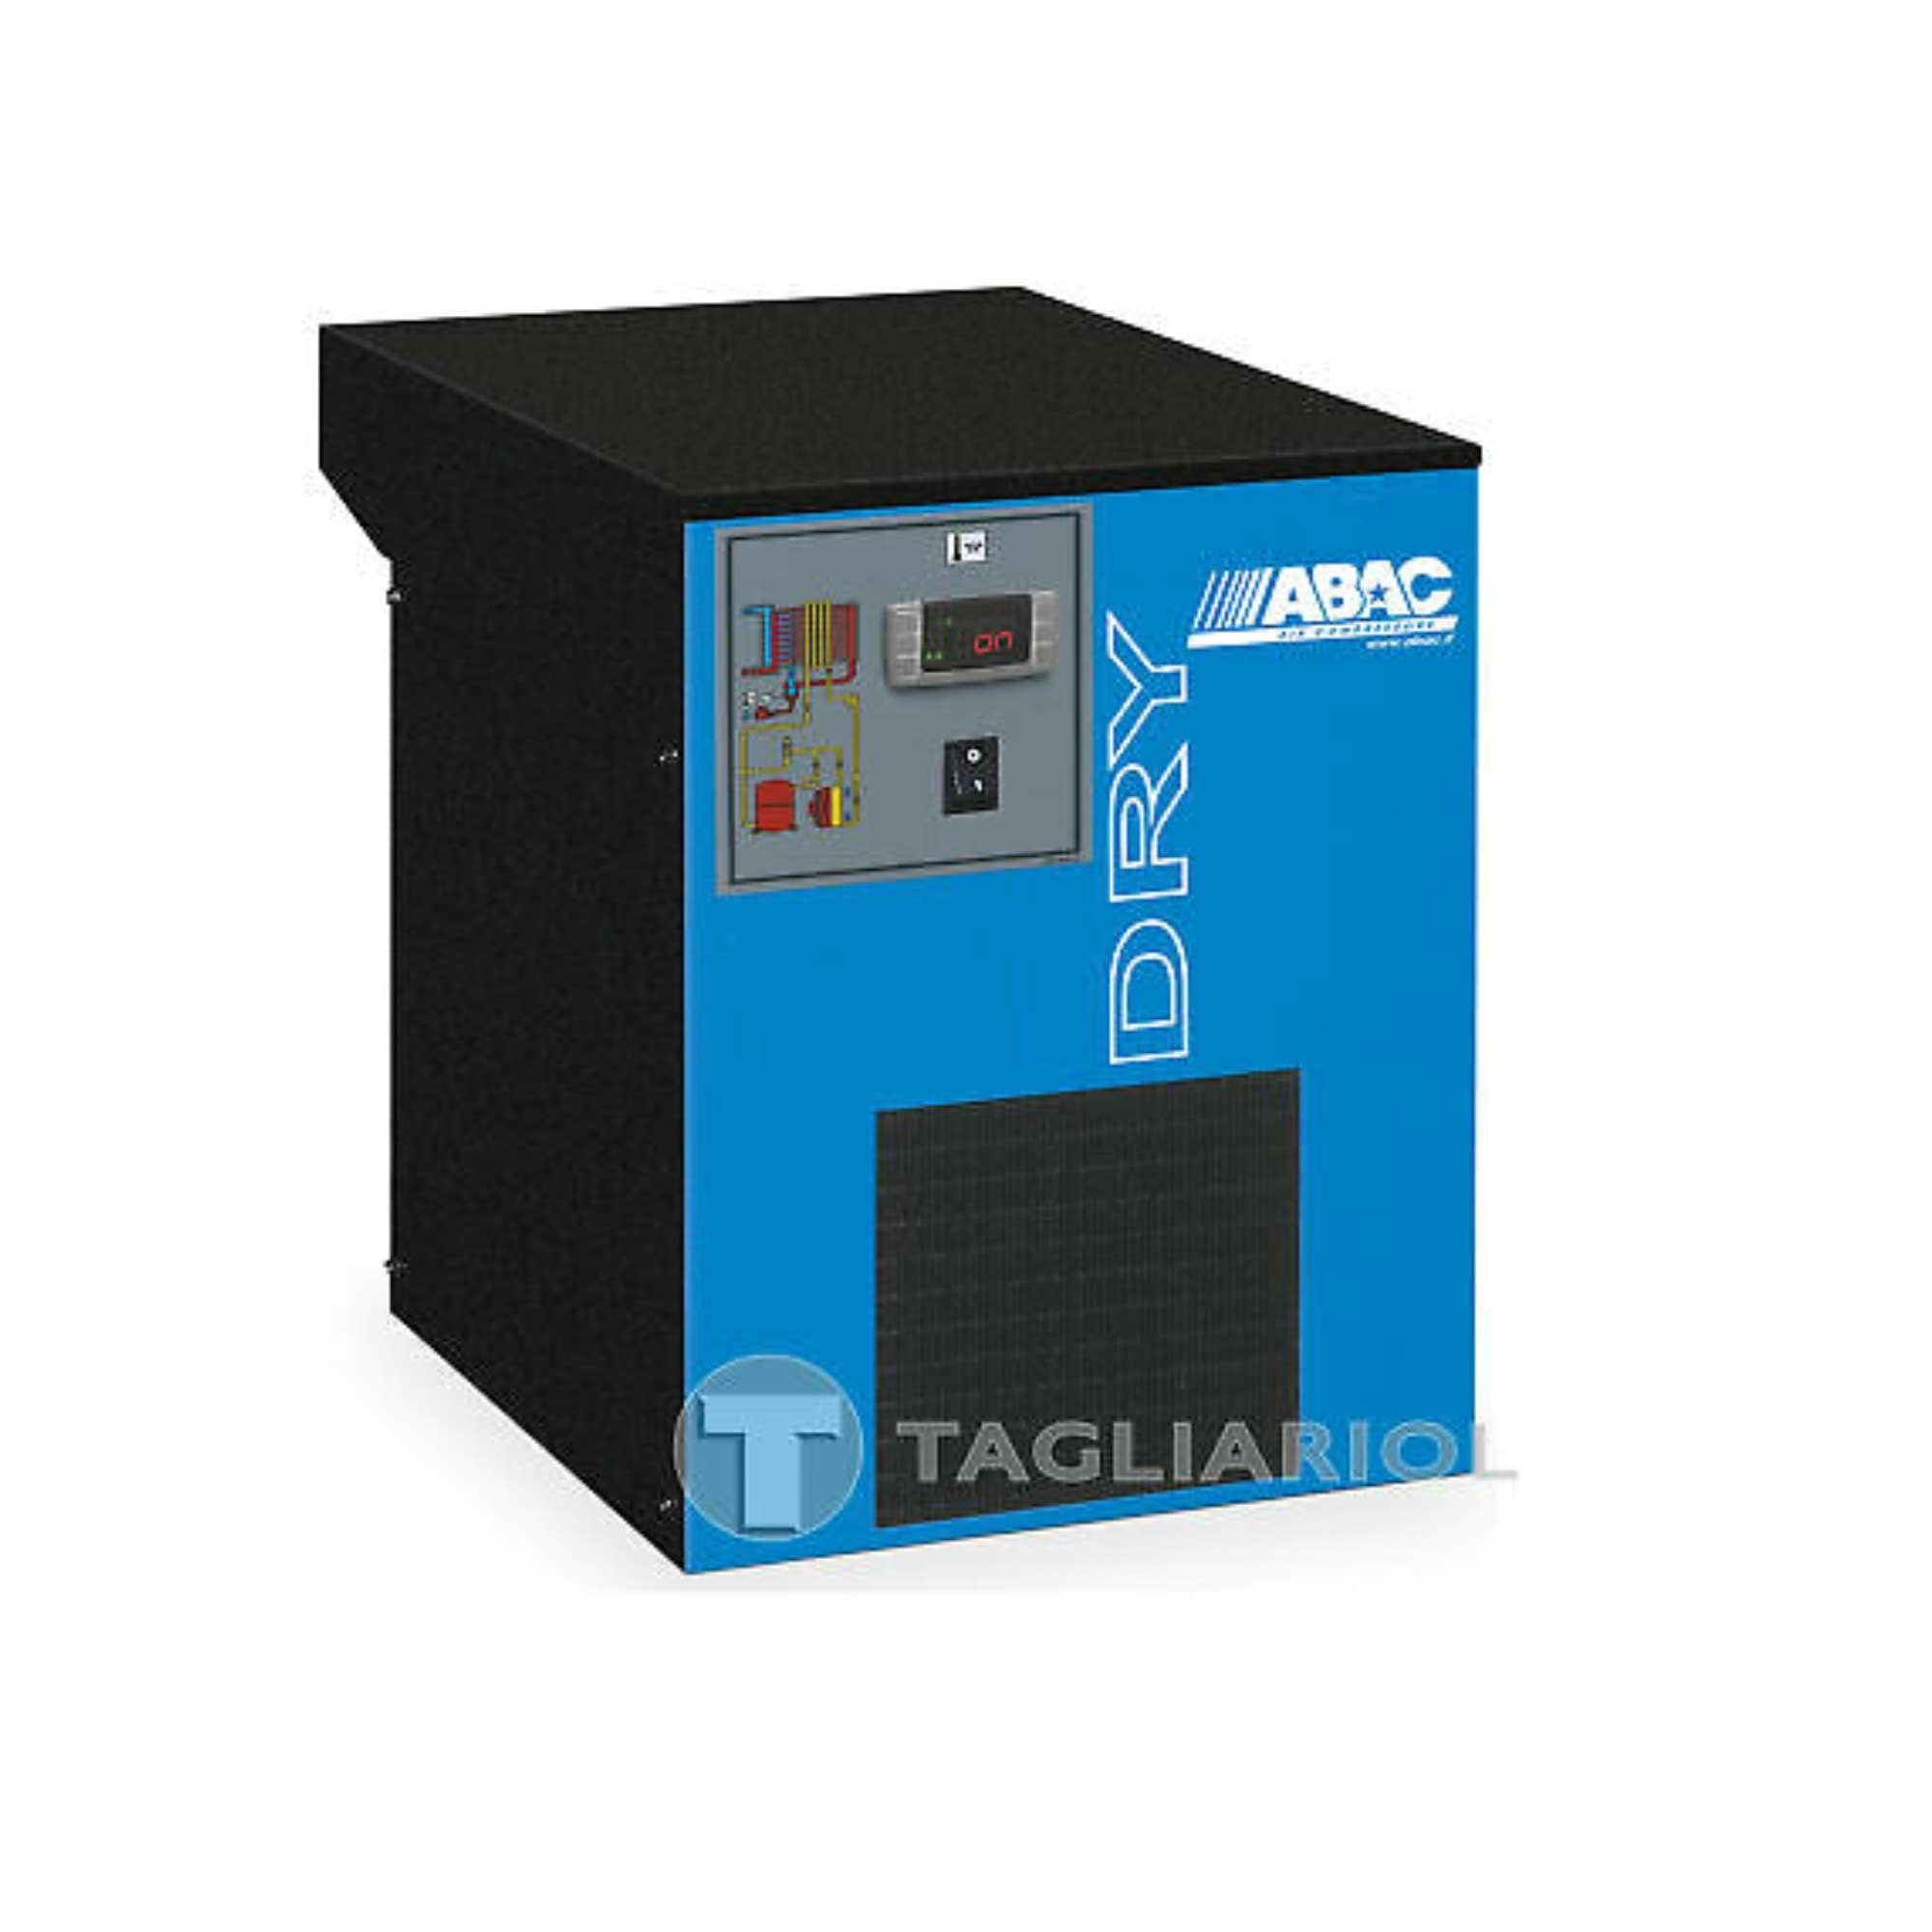 Abac dry 85 essiccatore a refrigerazione per impianti di aria compressa - 85m3/h 16bar 230v 50hz